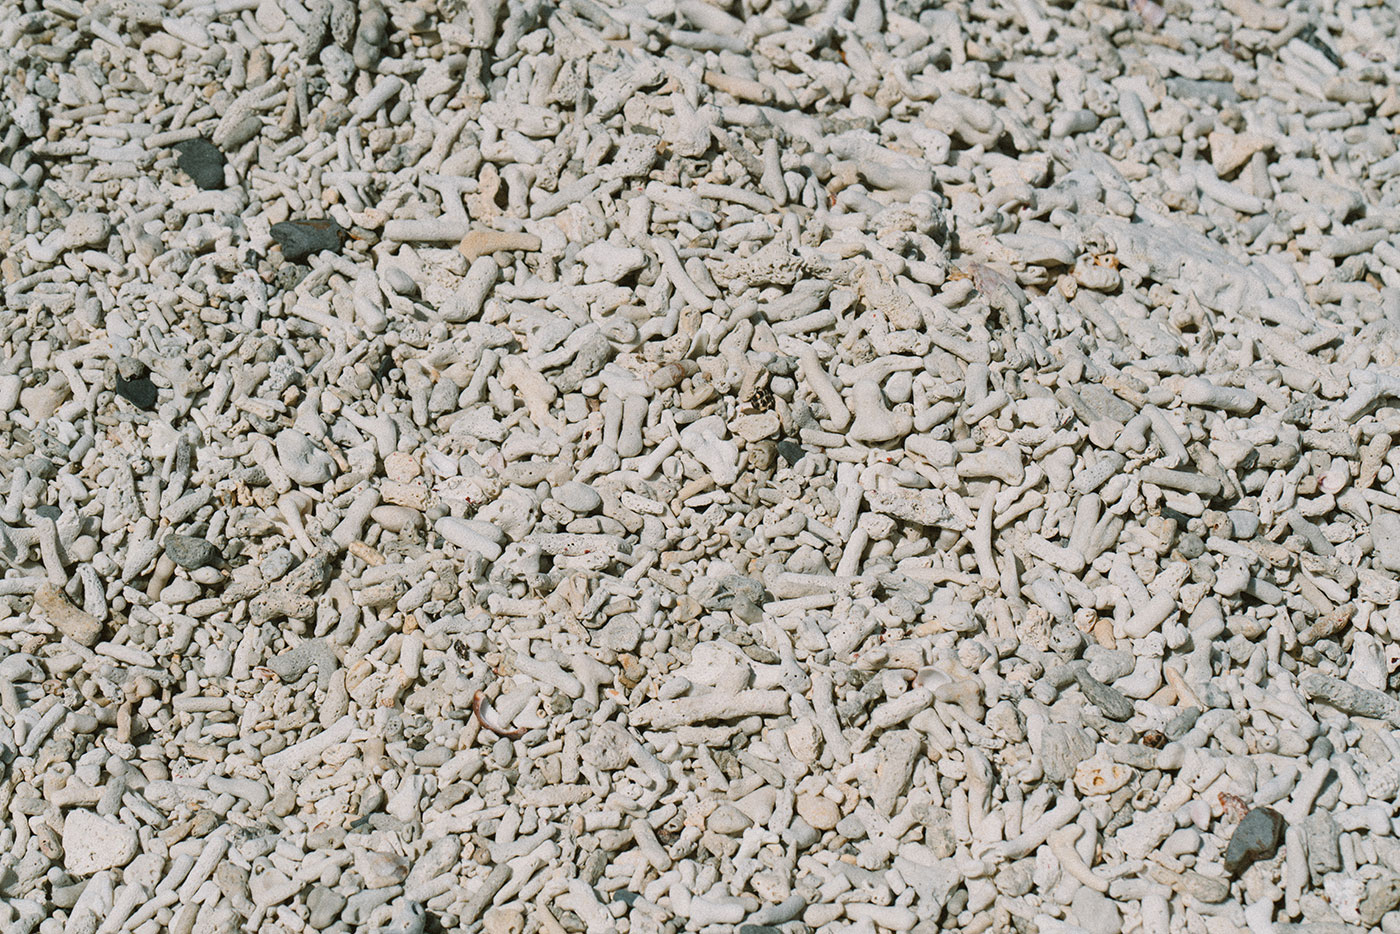 대체로 밝은색을 띄는 작은 산호 조각들로 이루어진 모래 사장을 가까이에서 촬영한 모습이다.